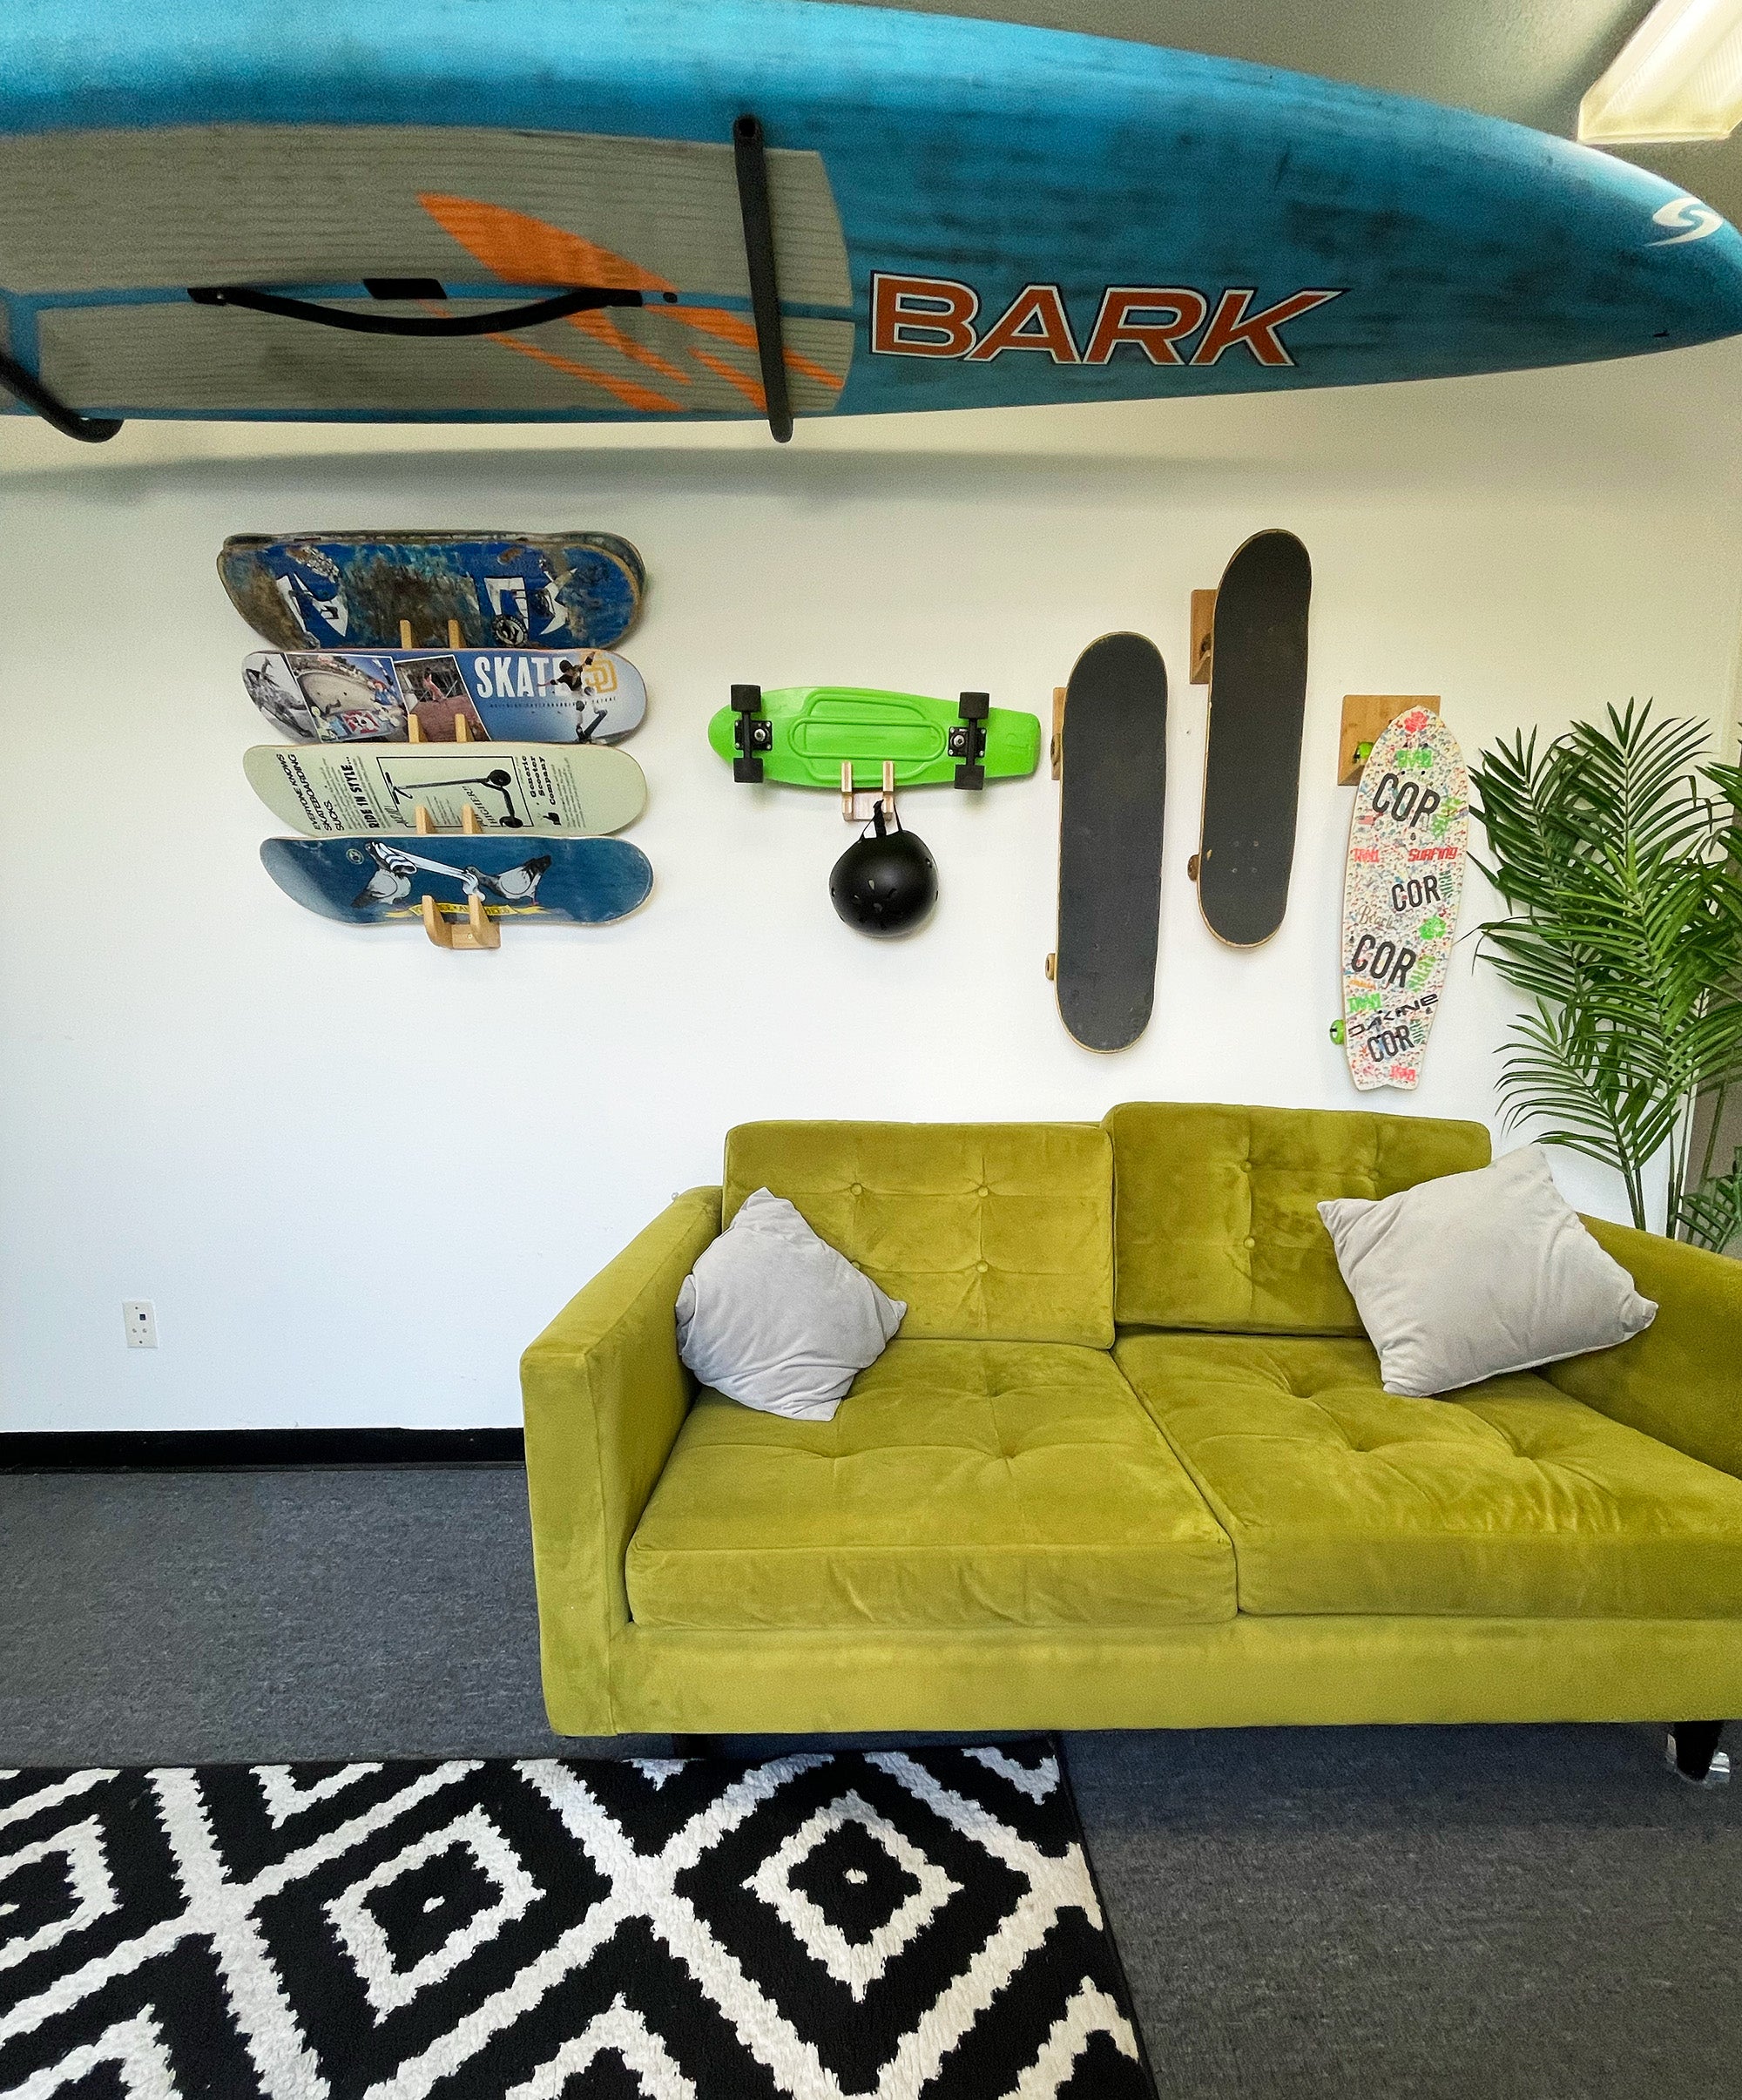 Four-Board Skateboard and Snowboard Bamboo Wall Rack